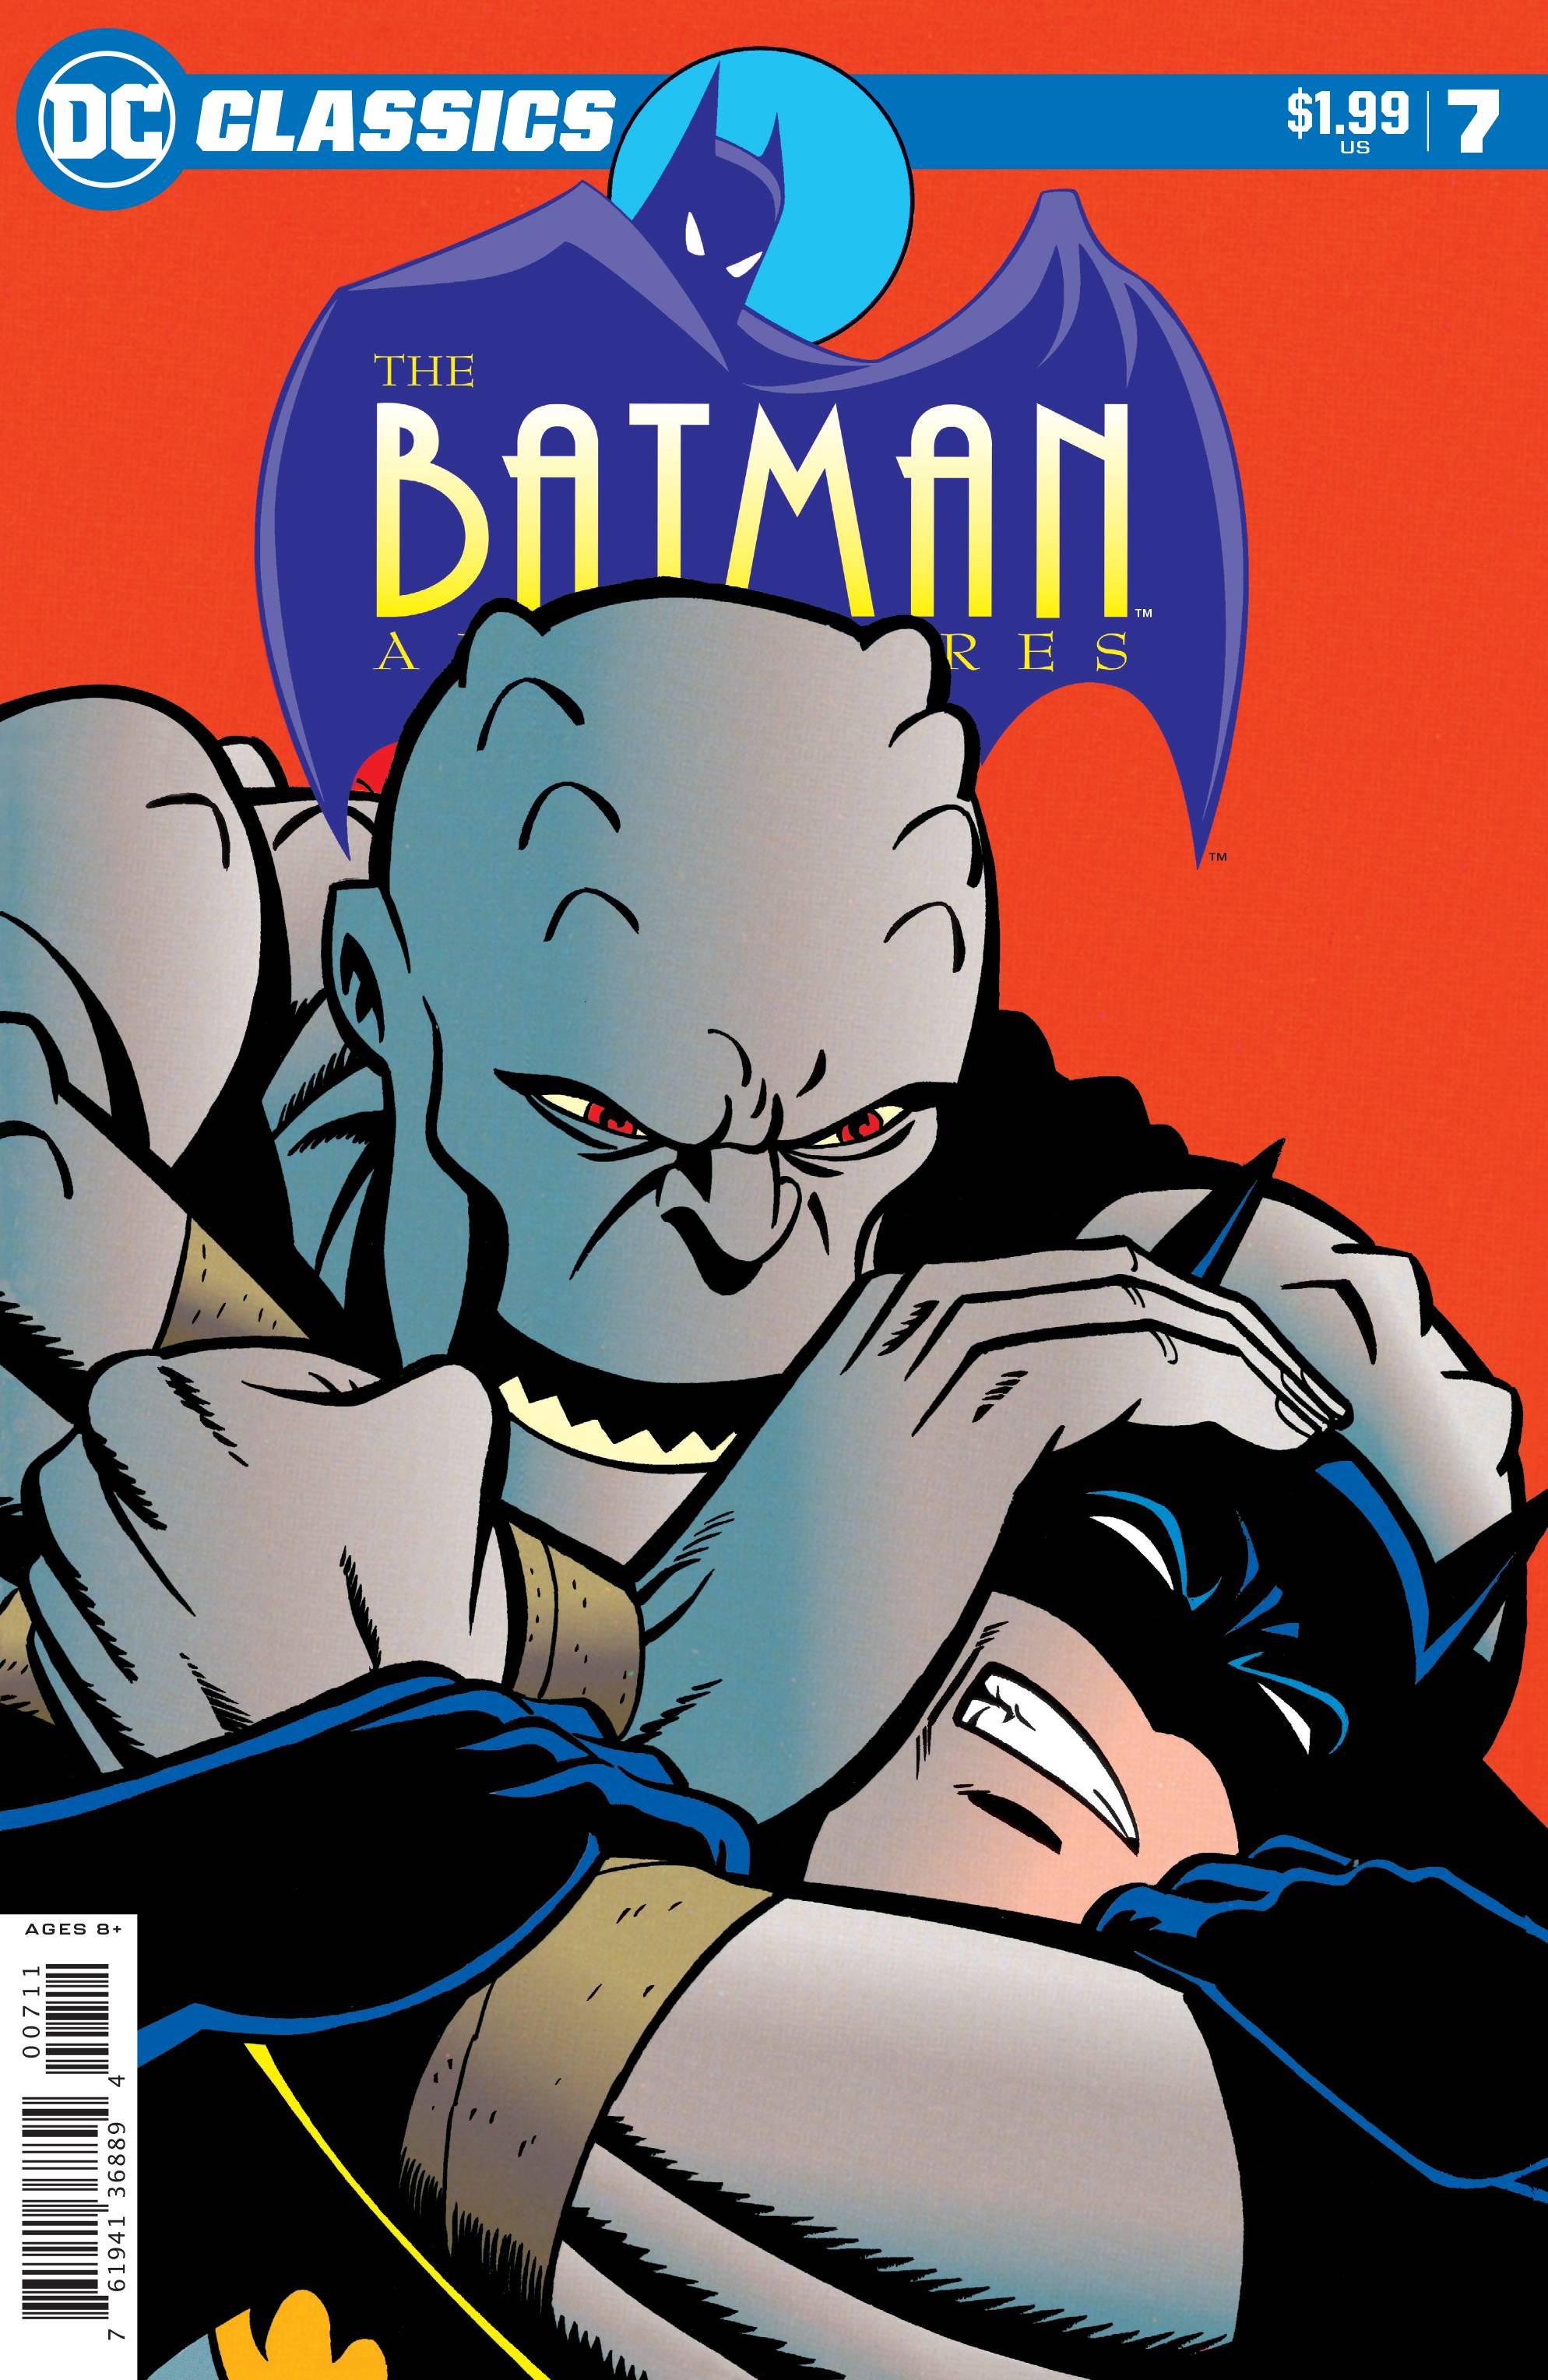 DC CLASSICS THE BATMAN ADVENTURES #7